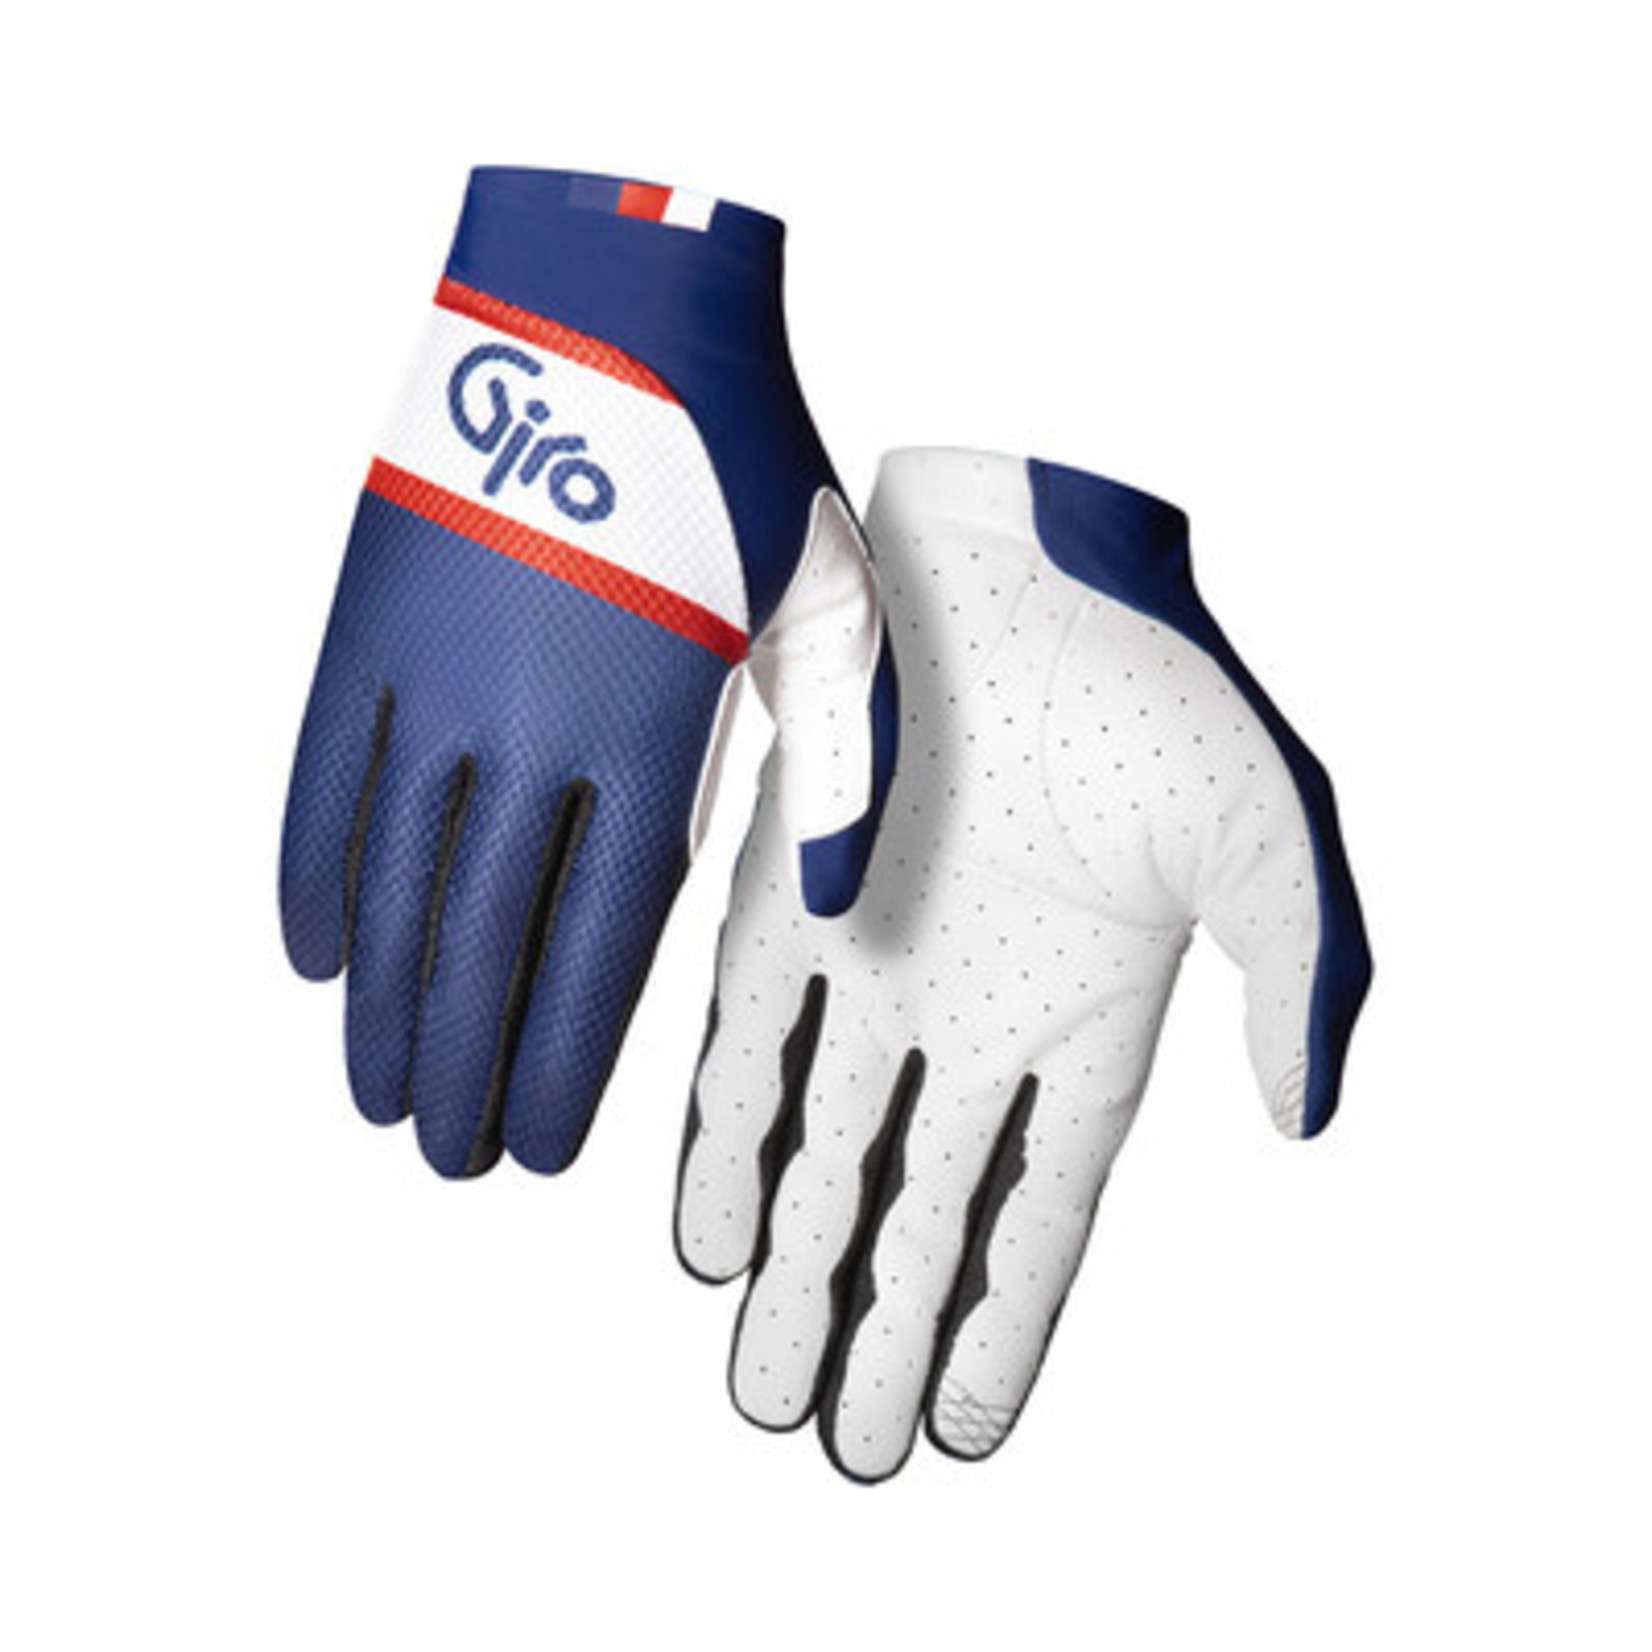 Giro Giro Trixter Cycling Glove